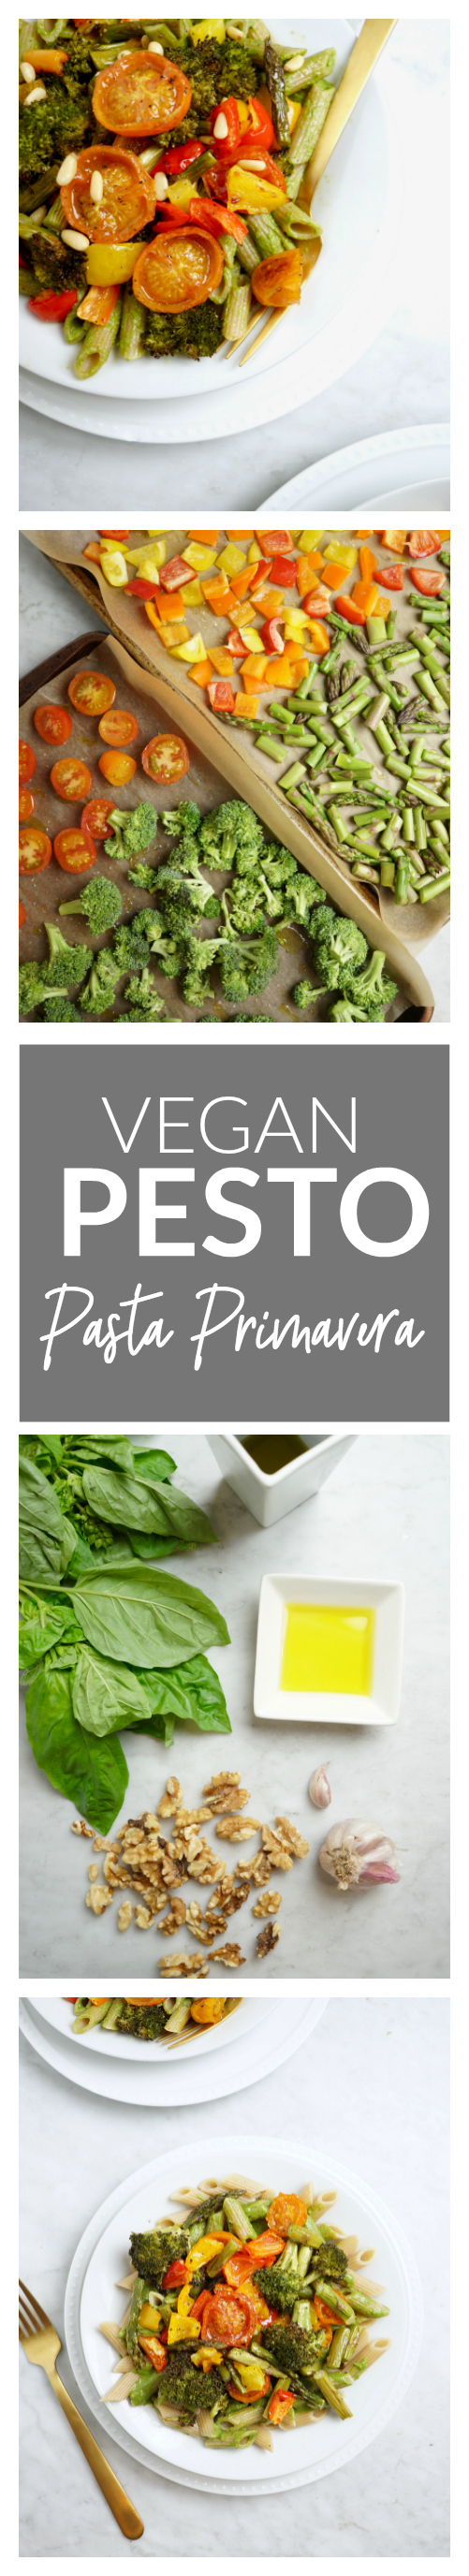 Vegan Pesto Pasta Primavera